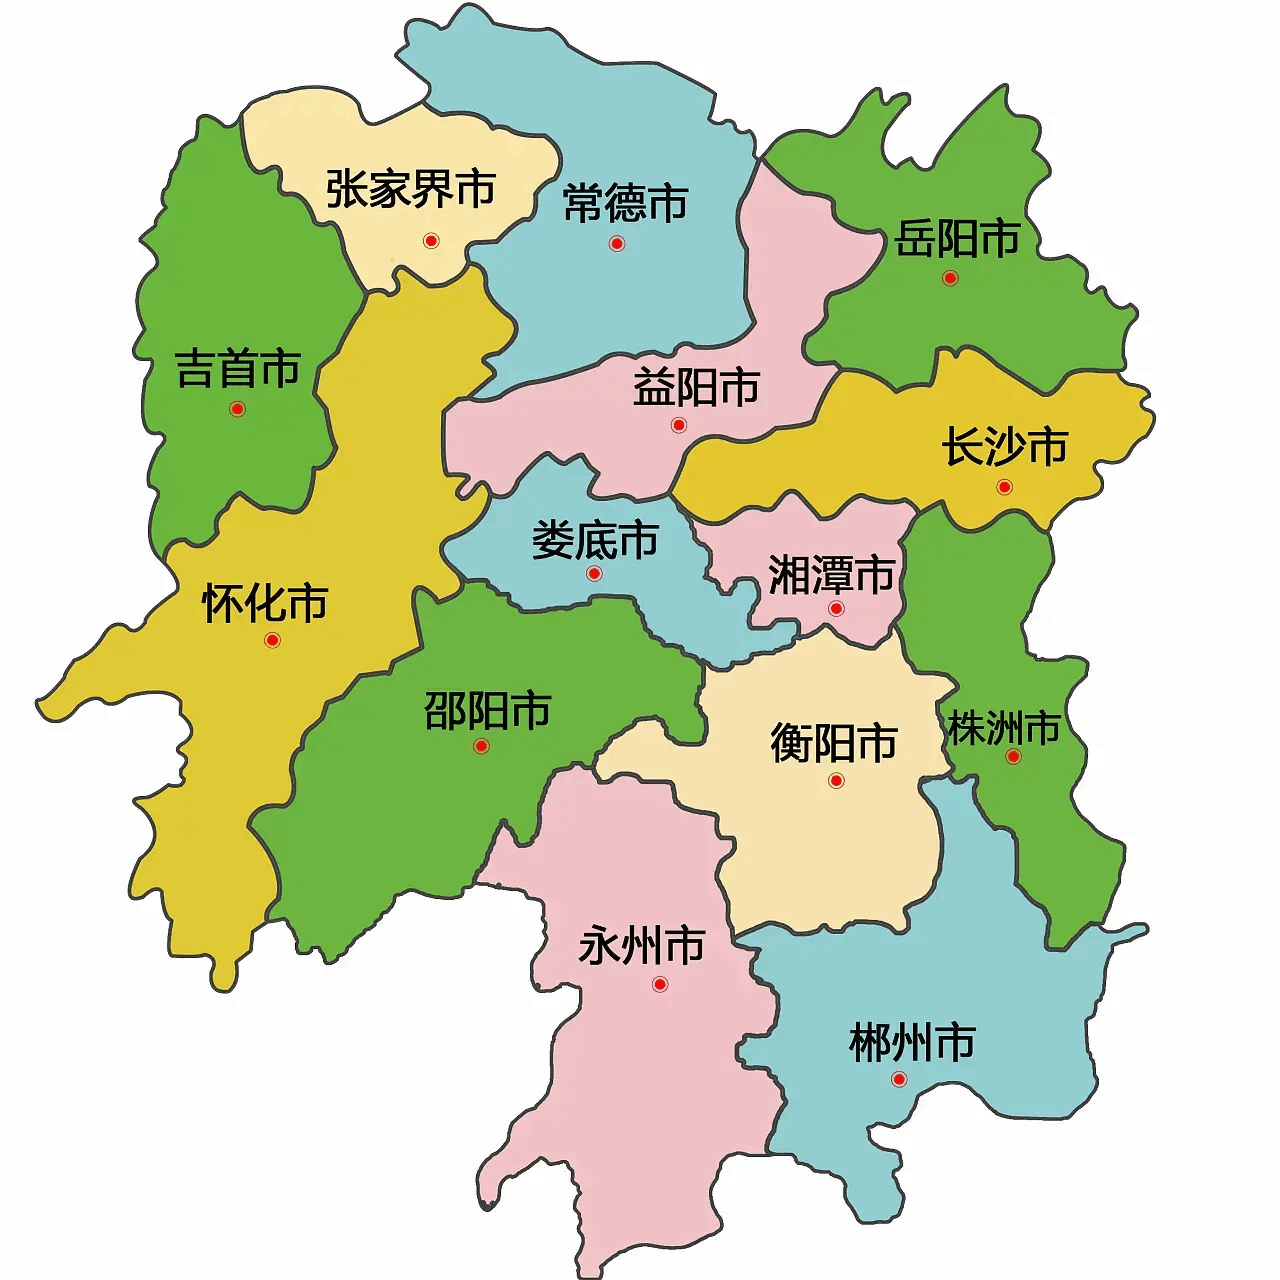 湖南最吃香的6个县市,将建成中等城市,未来将有大发展